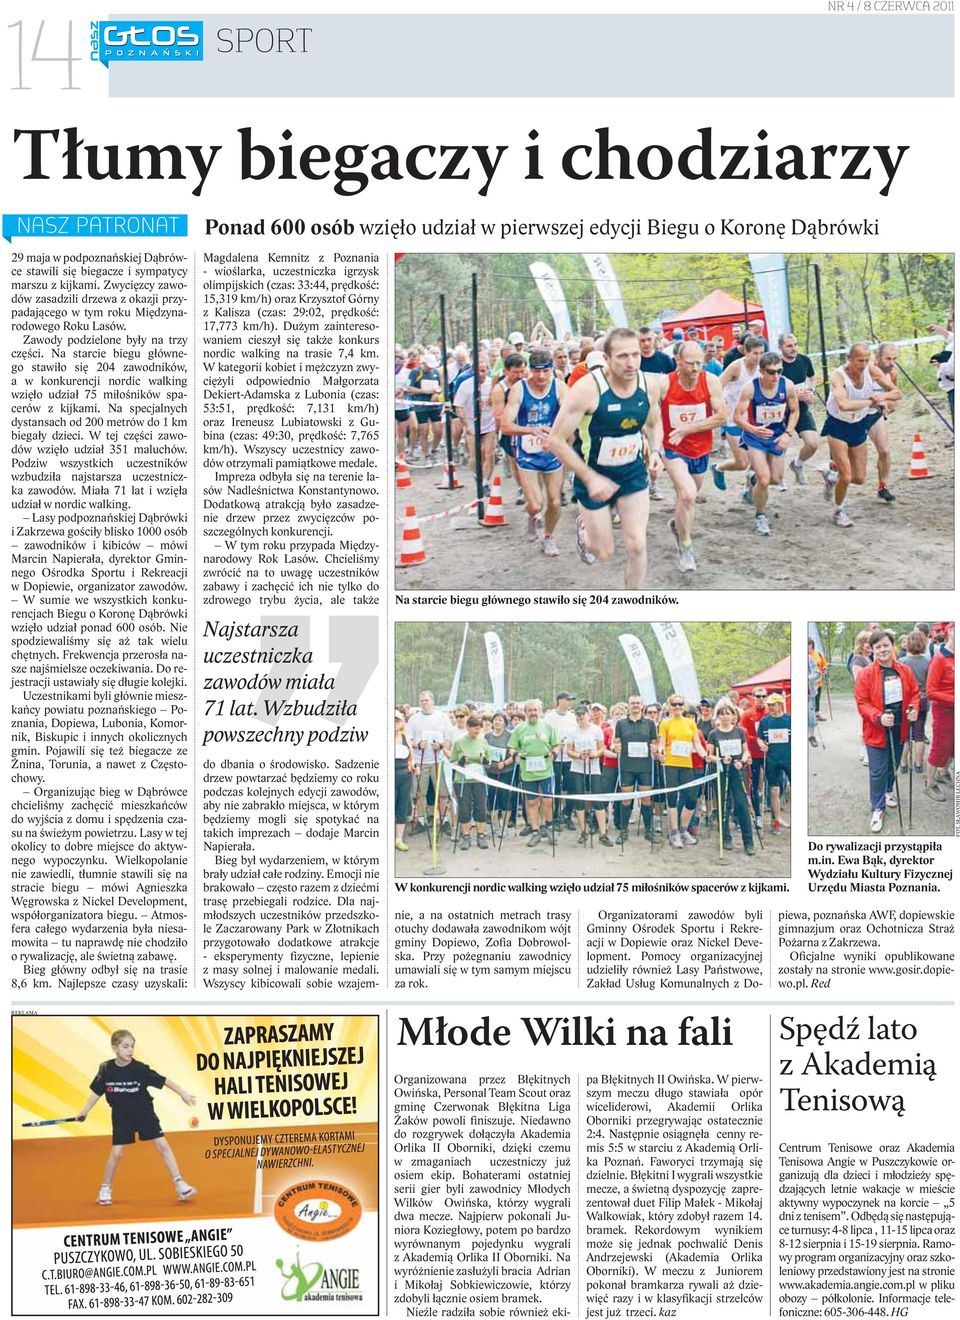 Na starcie biegu głównego stawiło się 204 zawodników, a w konkurencji nordic walking wzięło udział 75 miłośników spacerów z kijkami. Na specjalnych dystansach od 200 metrów do 1 km biegały dzieci.